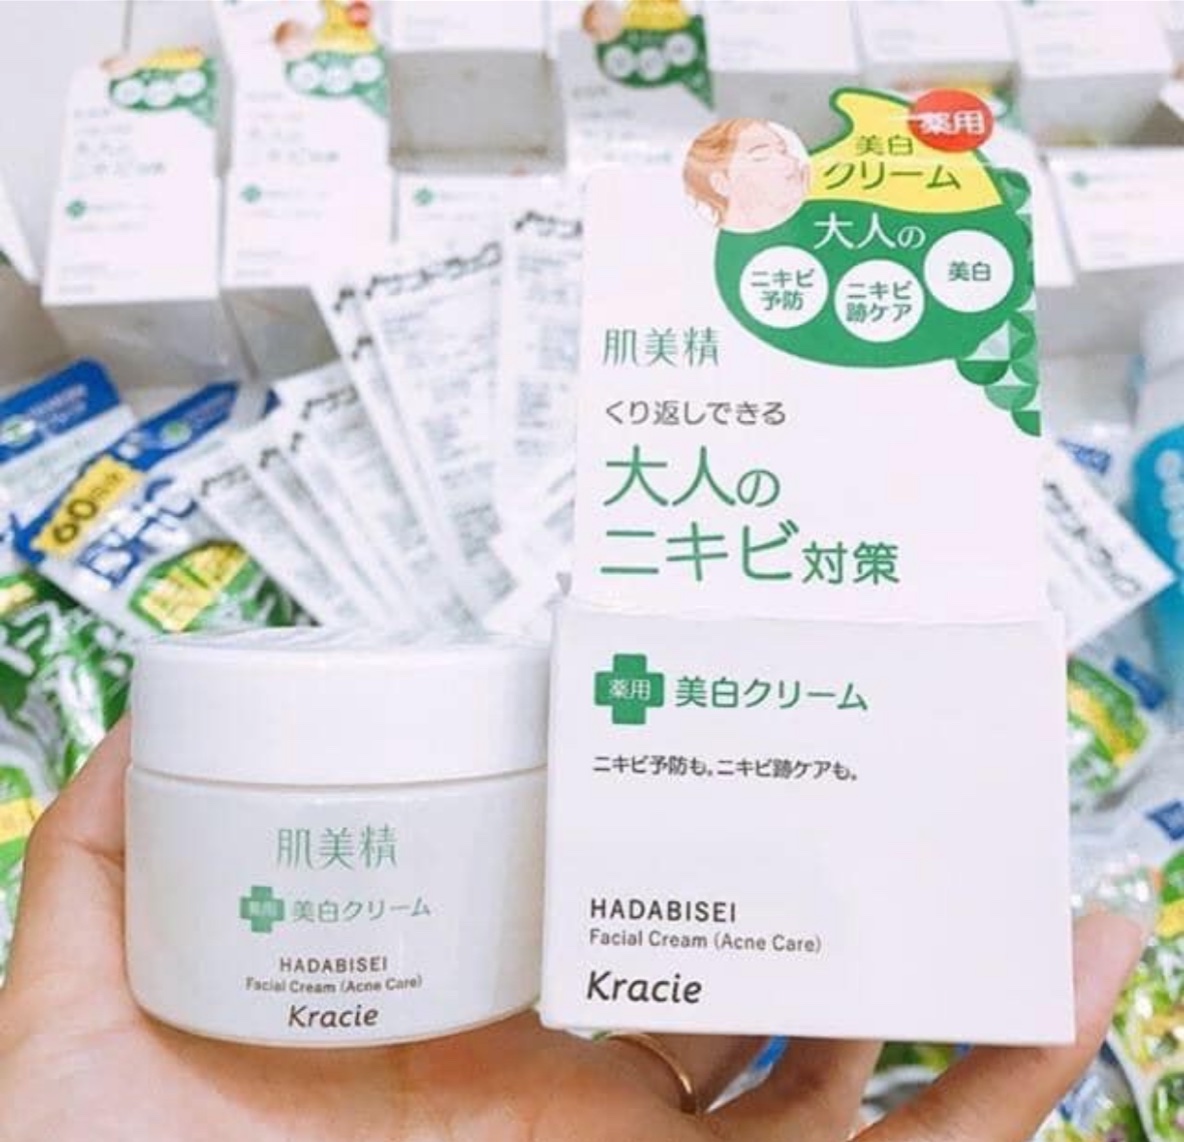 Kem dưỡng trị mụn Kracie Nhật Bản Hadabisei Facial Cream (Acne Care) - Nhật